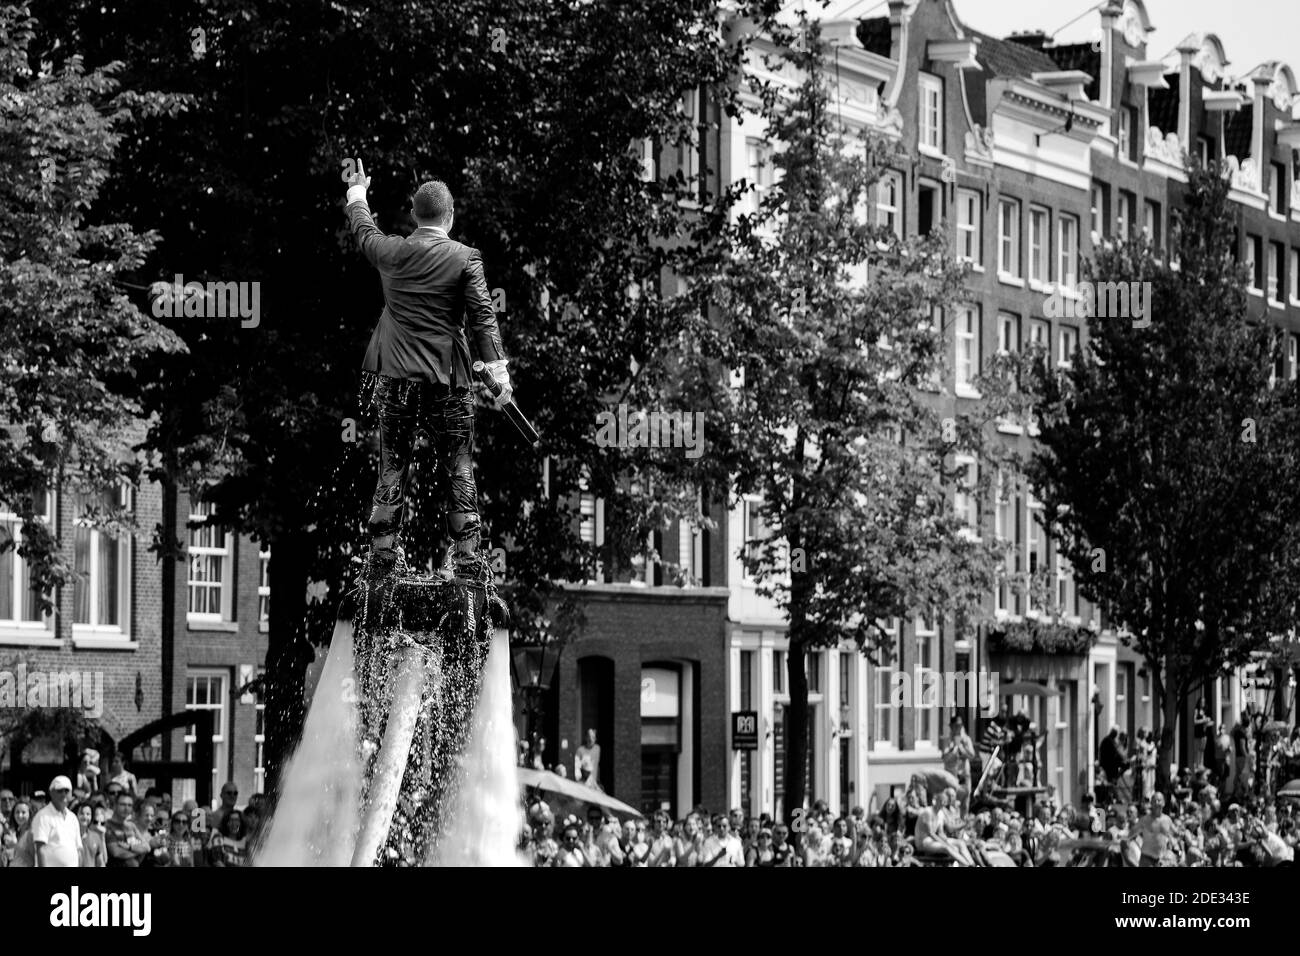 L'homme en flyboard en costume mouillé s'élève bien au-dessus de la foule pendant la fierté gay dans les canaux d'Amsterdam. Photographie en noir et blanc. Banque D'Images